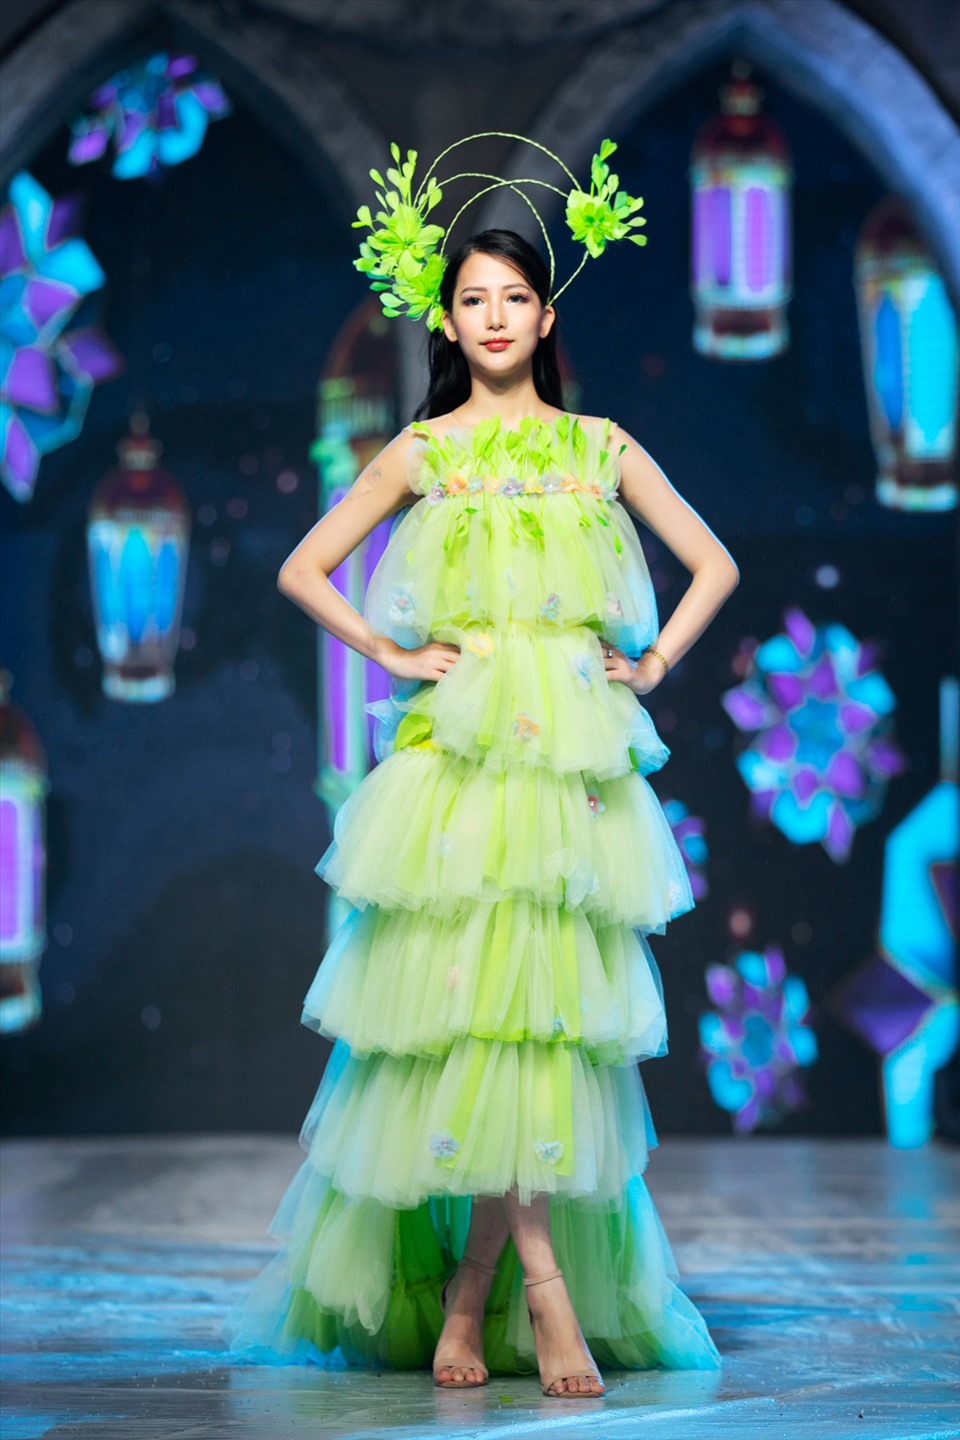 Ghi dấu ấn tại Tuần lễ thời trang trẻ em Việt Nam - Vietnam Junior Fashion Week tổ chức tại Hà Nội vừa qua, Thu Hà nổi bật bởi vẻ ngoài xinh xắn, phong thái đầy chuyên nghiệp của một người mẫu trẻ. Ảnh: Kiếng Cận Team.